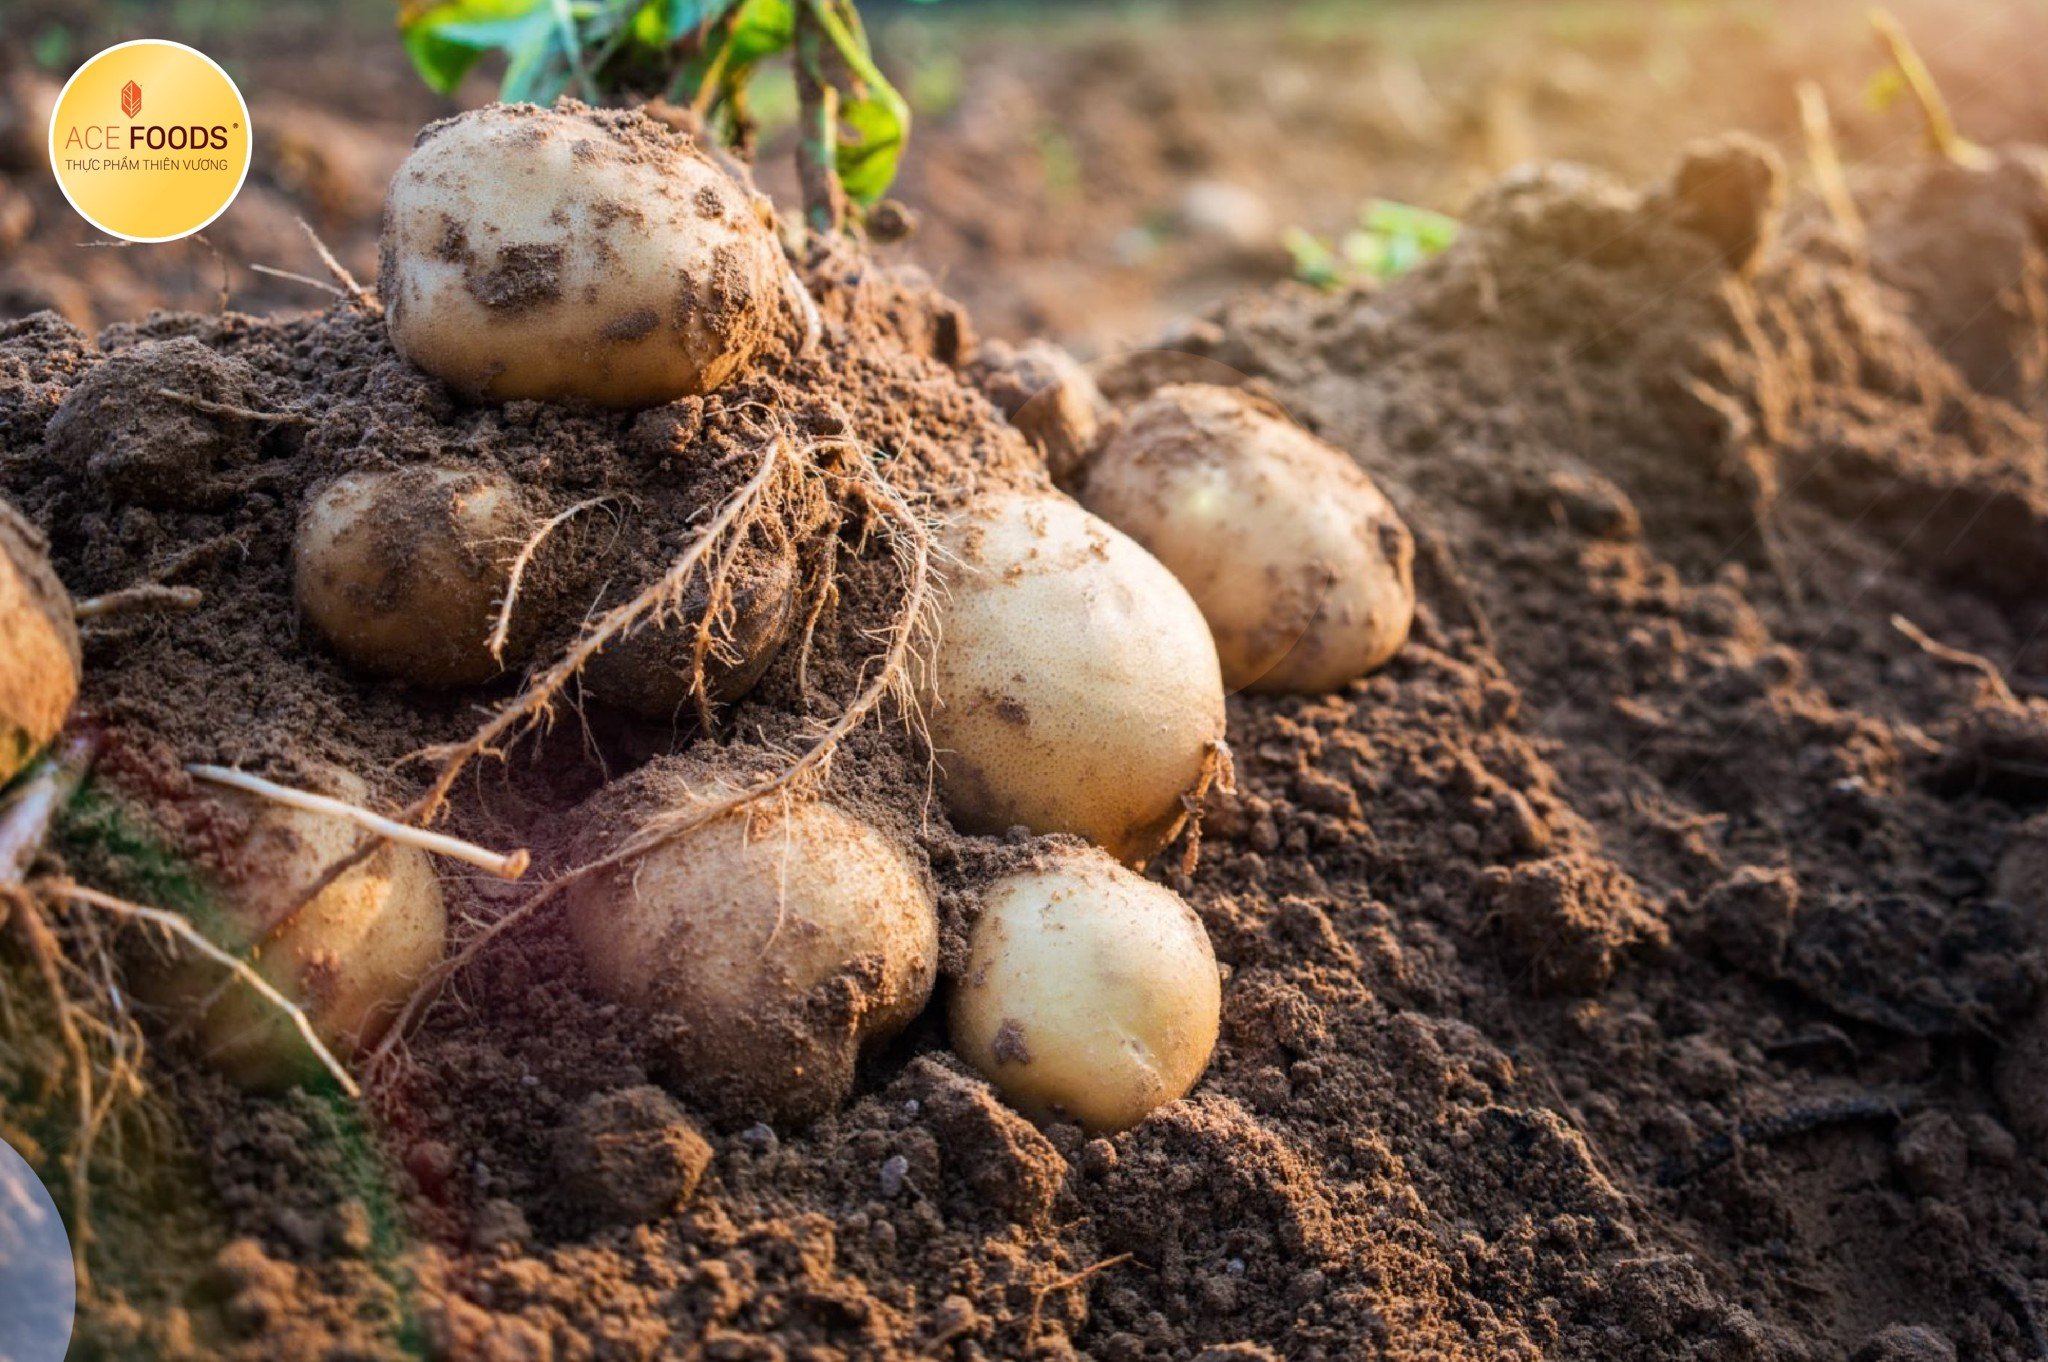 Lựa chọn giống khoai tây Binjte chính là điều giúp CLAREBOUT thành công trên mỗi sản phẩm khoai bán ra trên thị trường